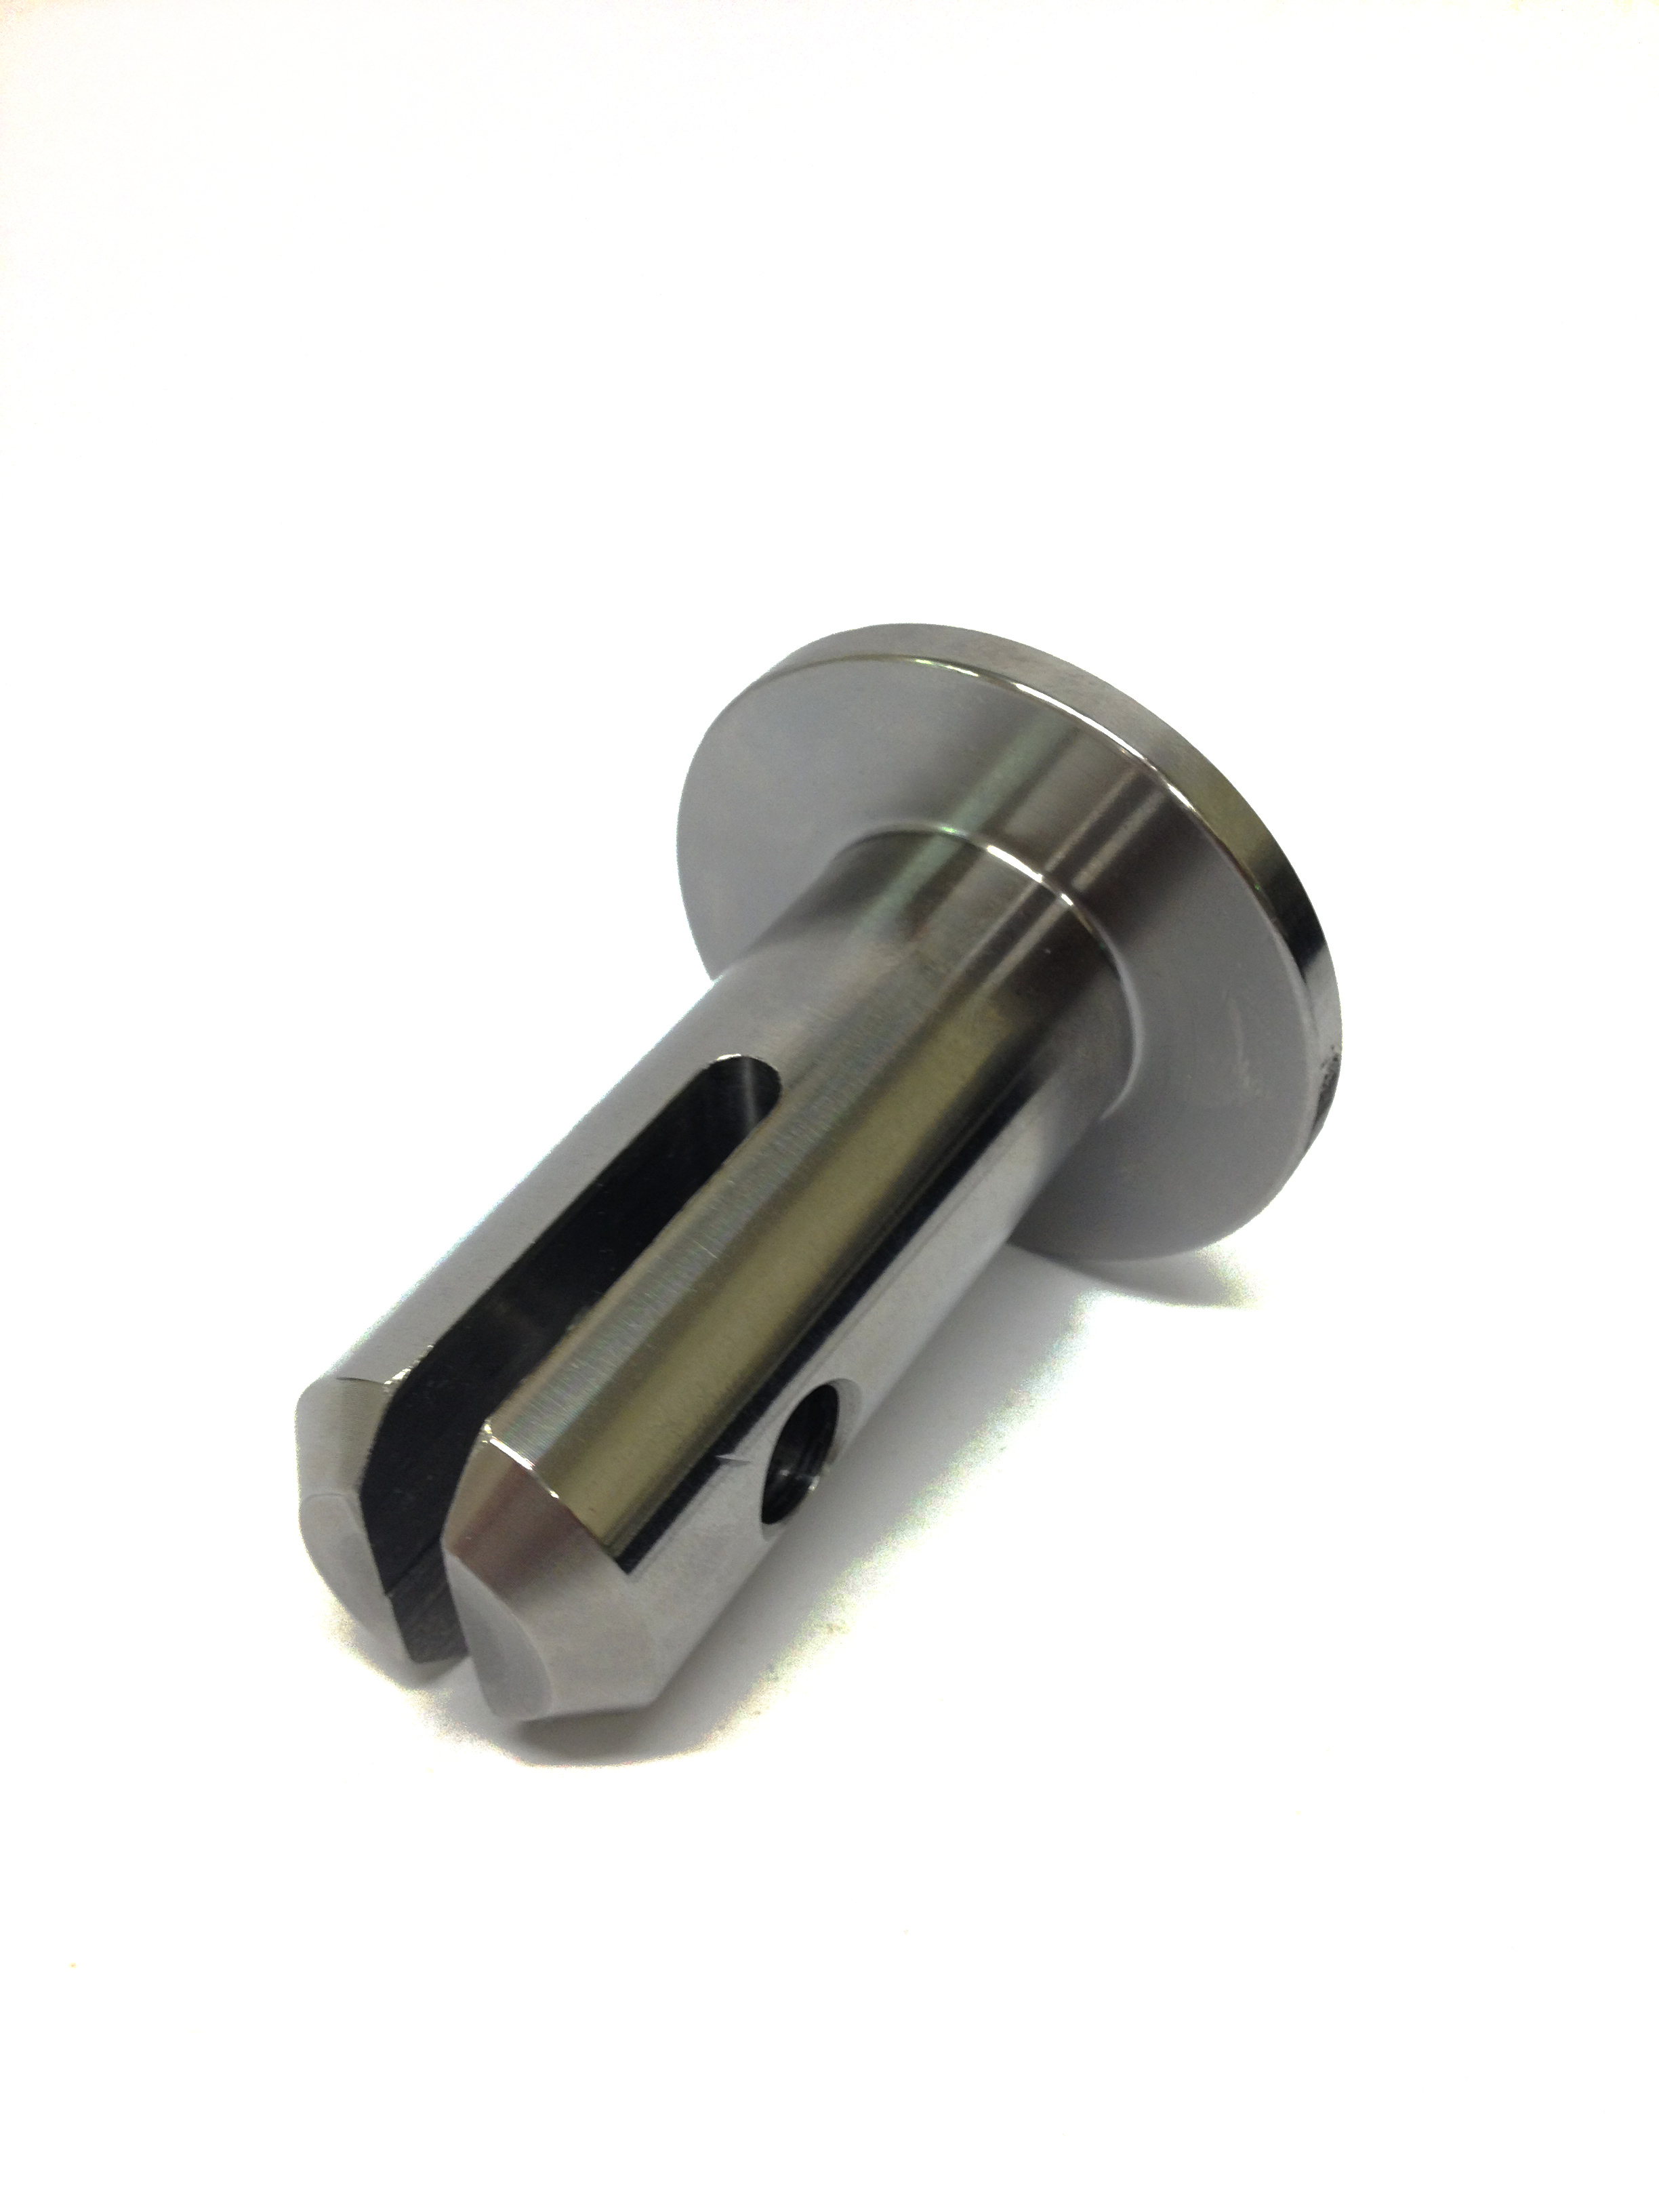 Hopper Lock Pin